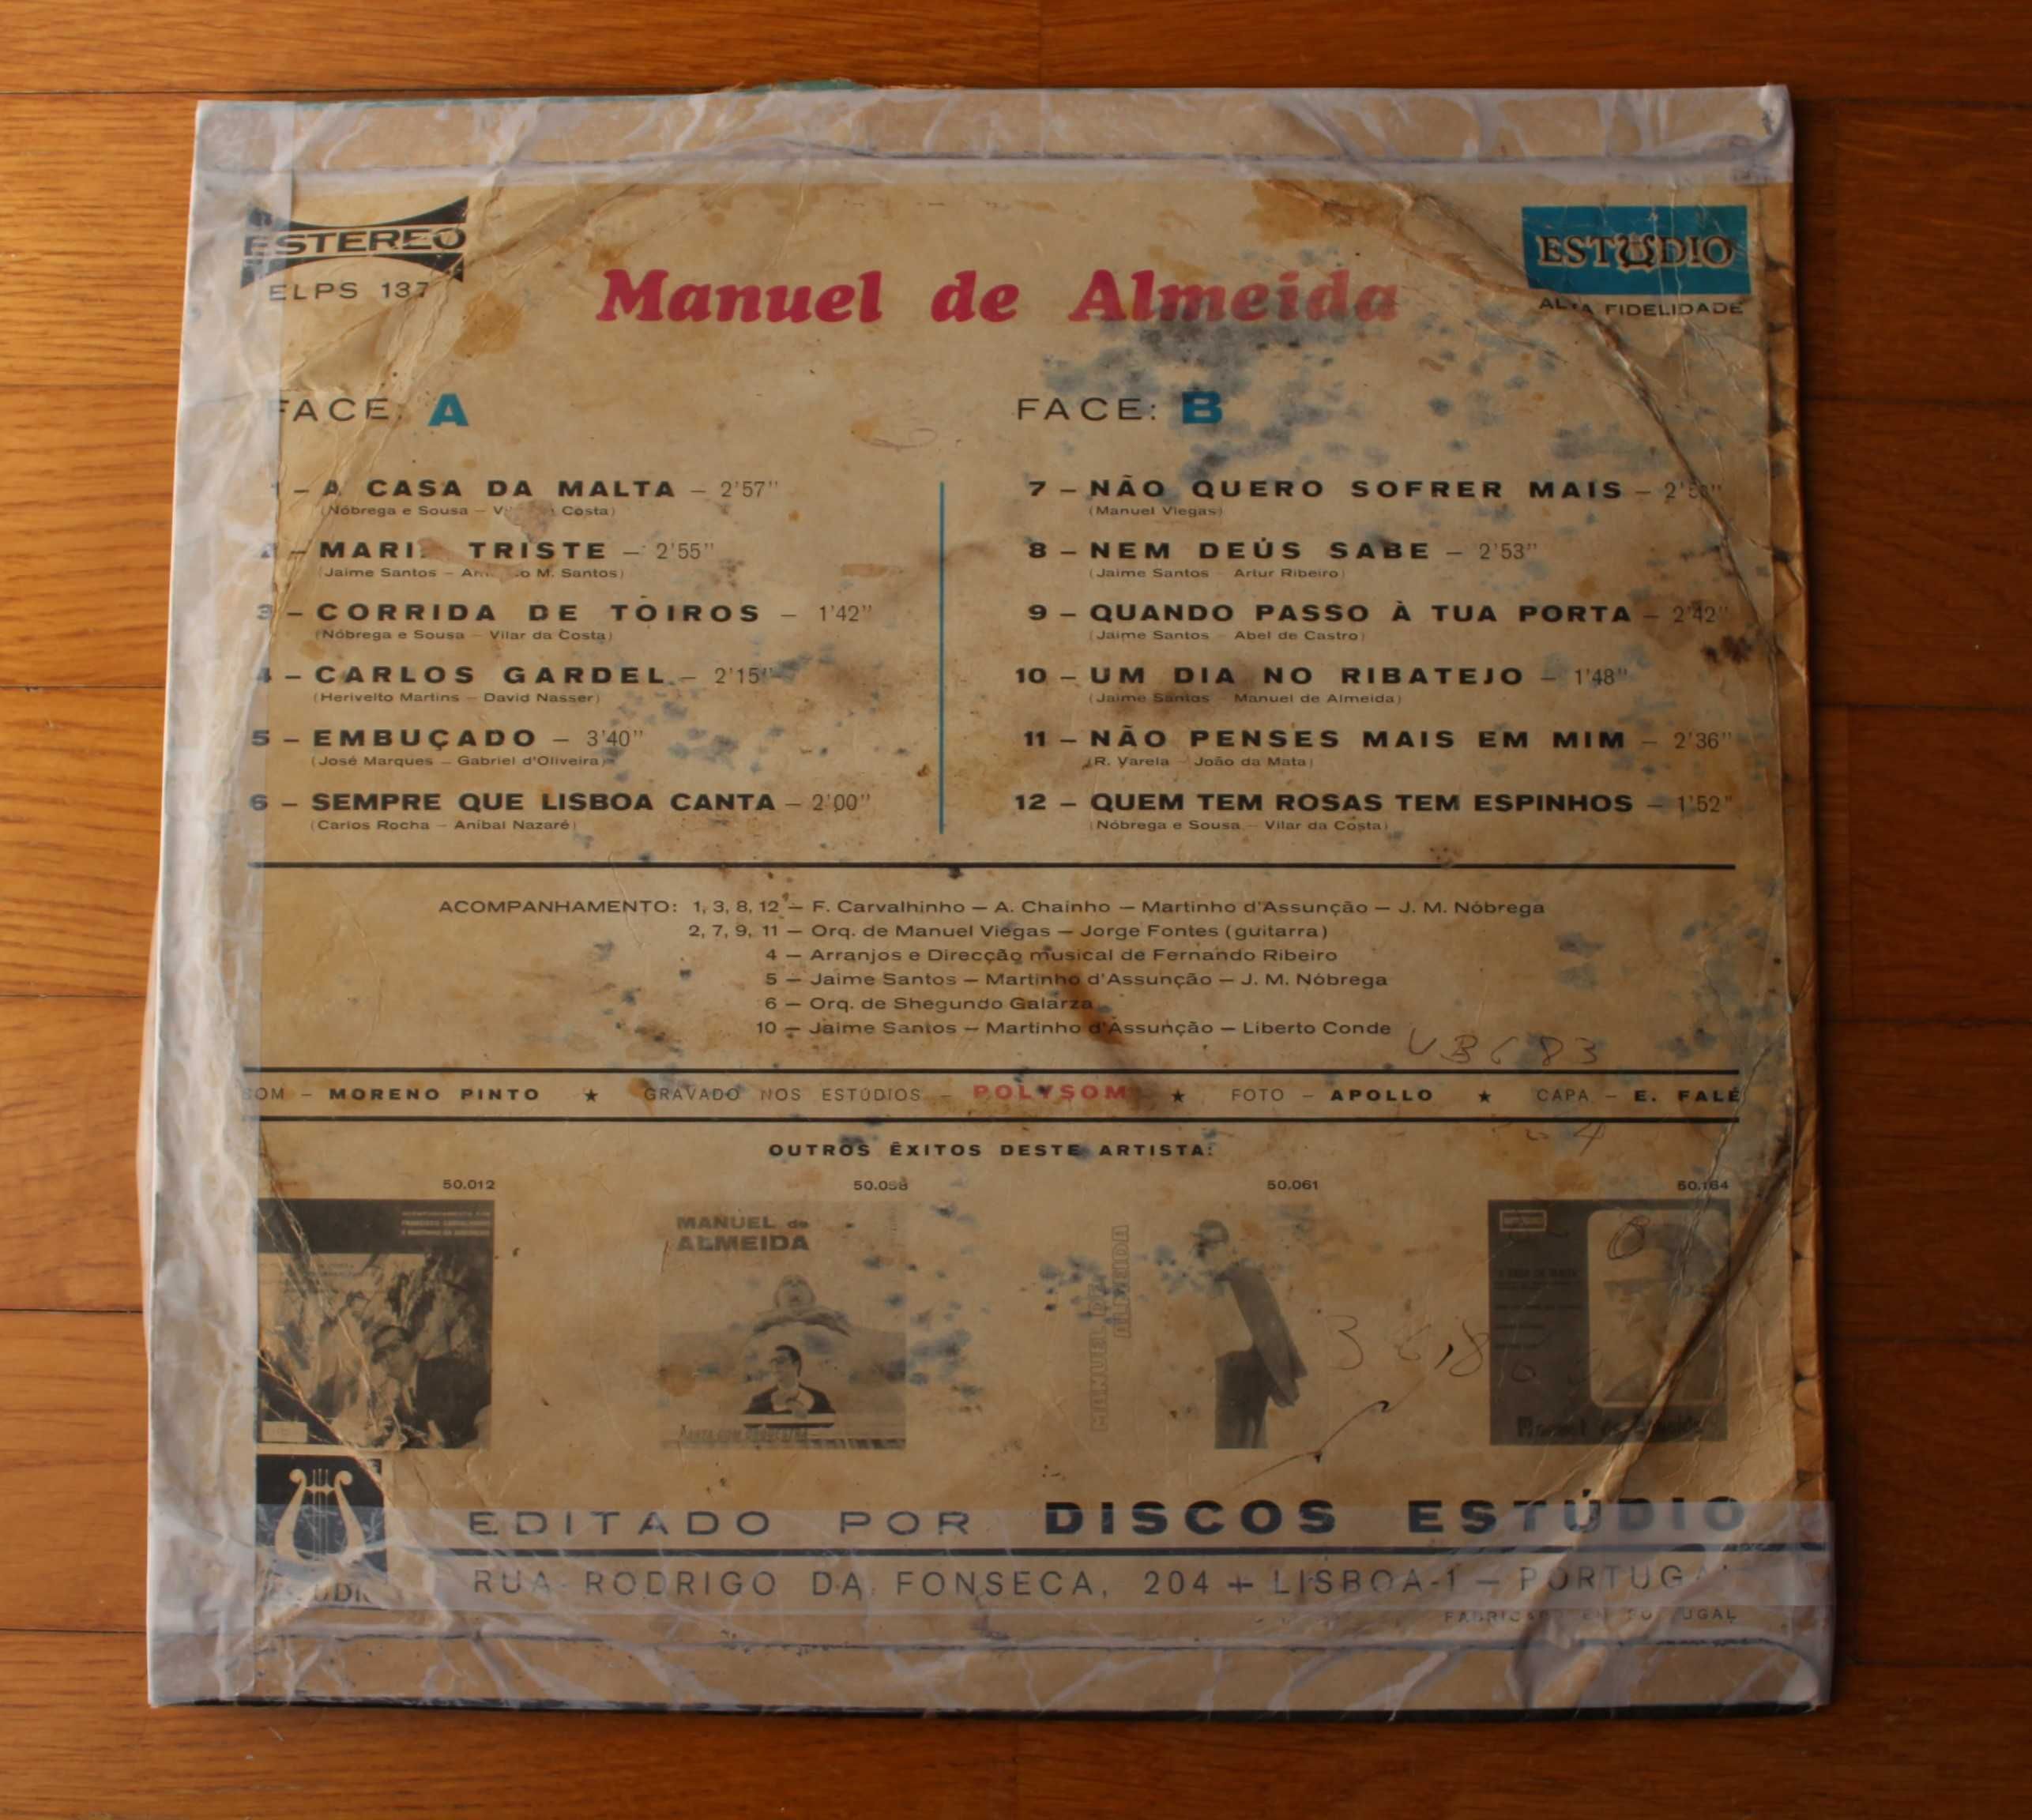 LP "Manuel de Almeida" - Manuel de Almeida - Disco vinil